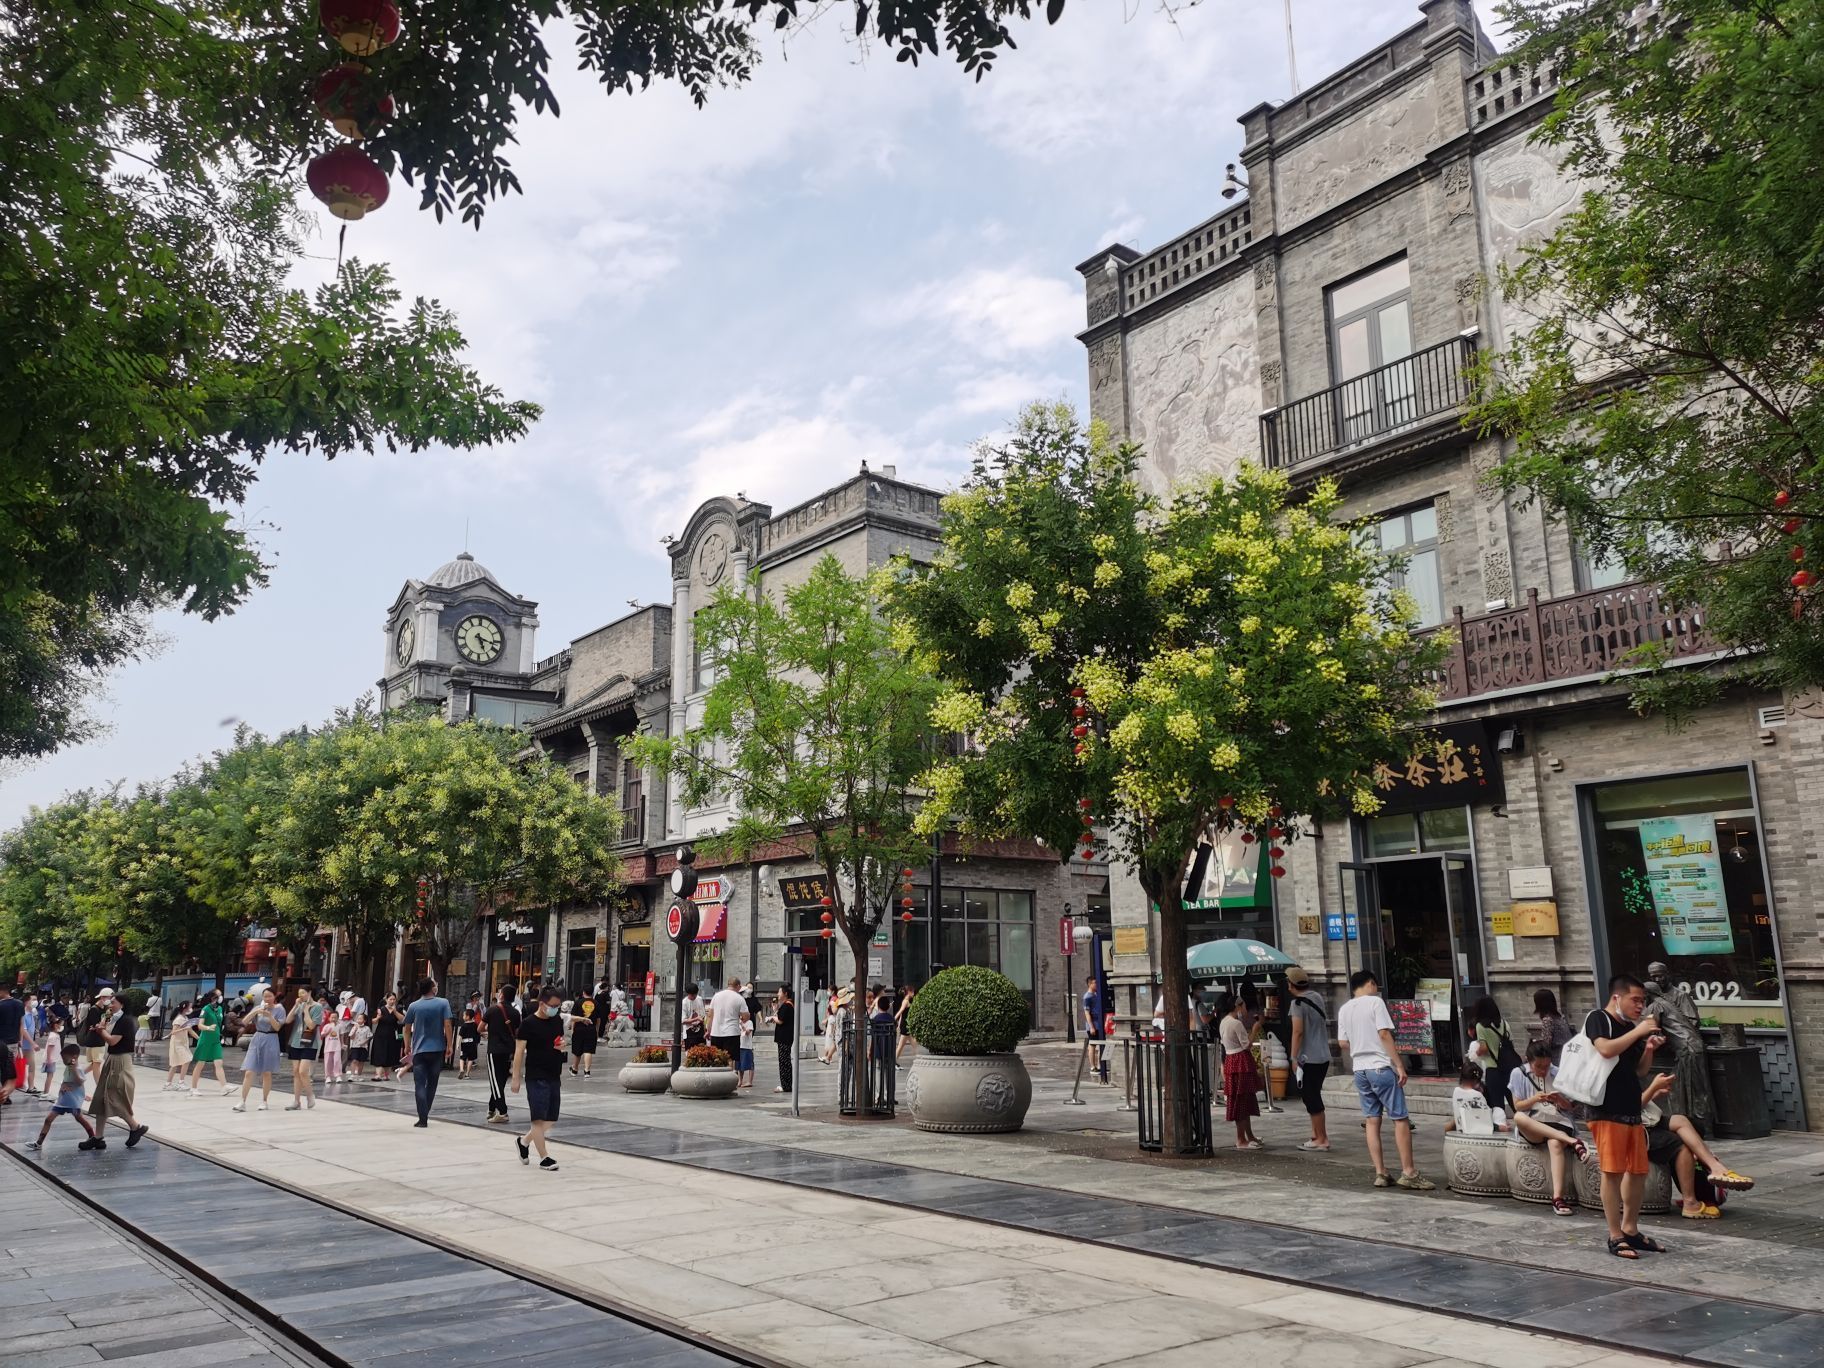 BeiJing Qianmen Street